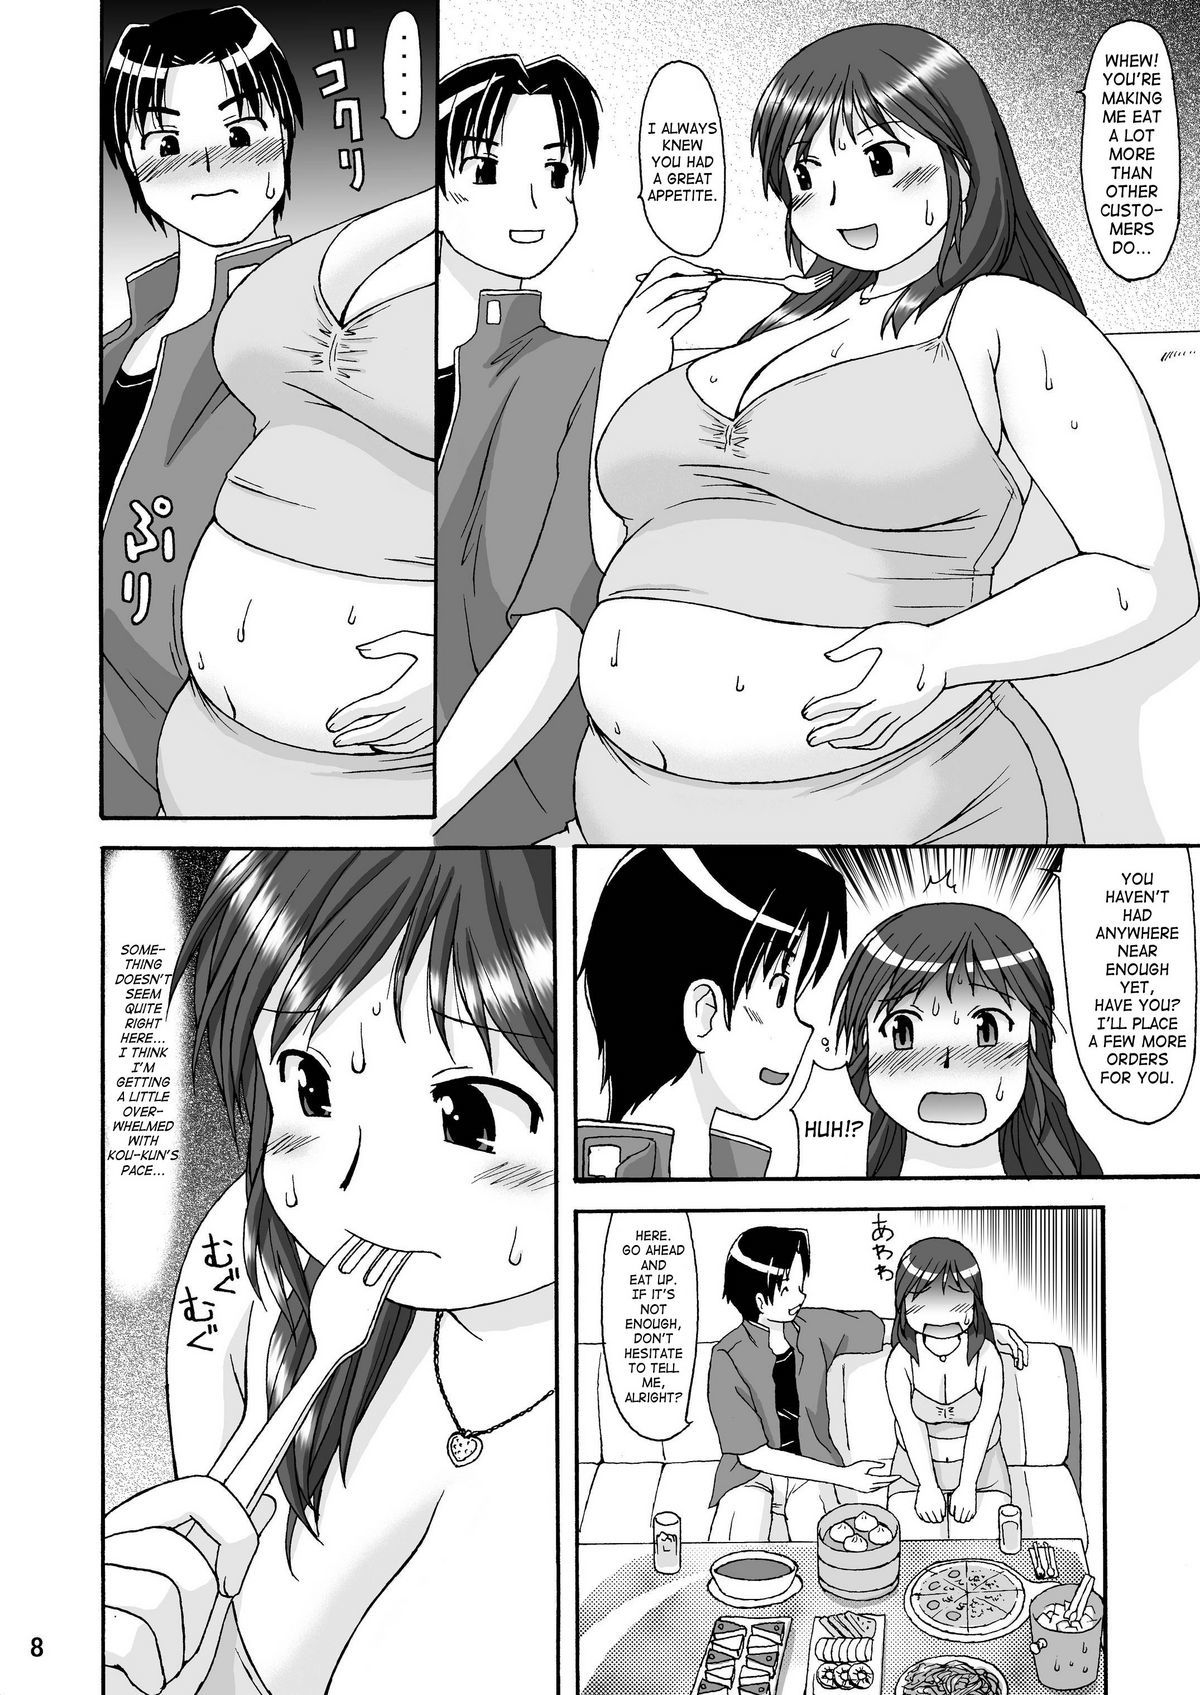 RIGHT STUFF original 6 hentai manga